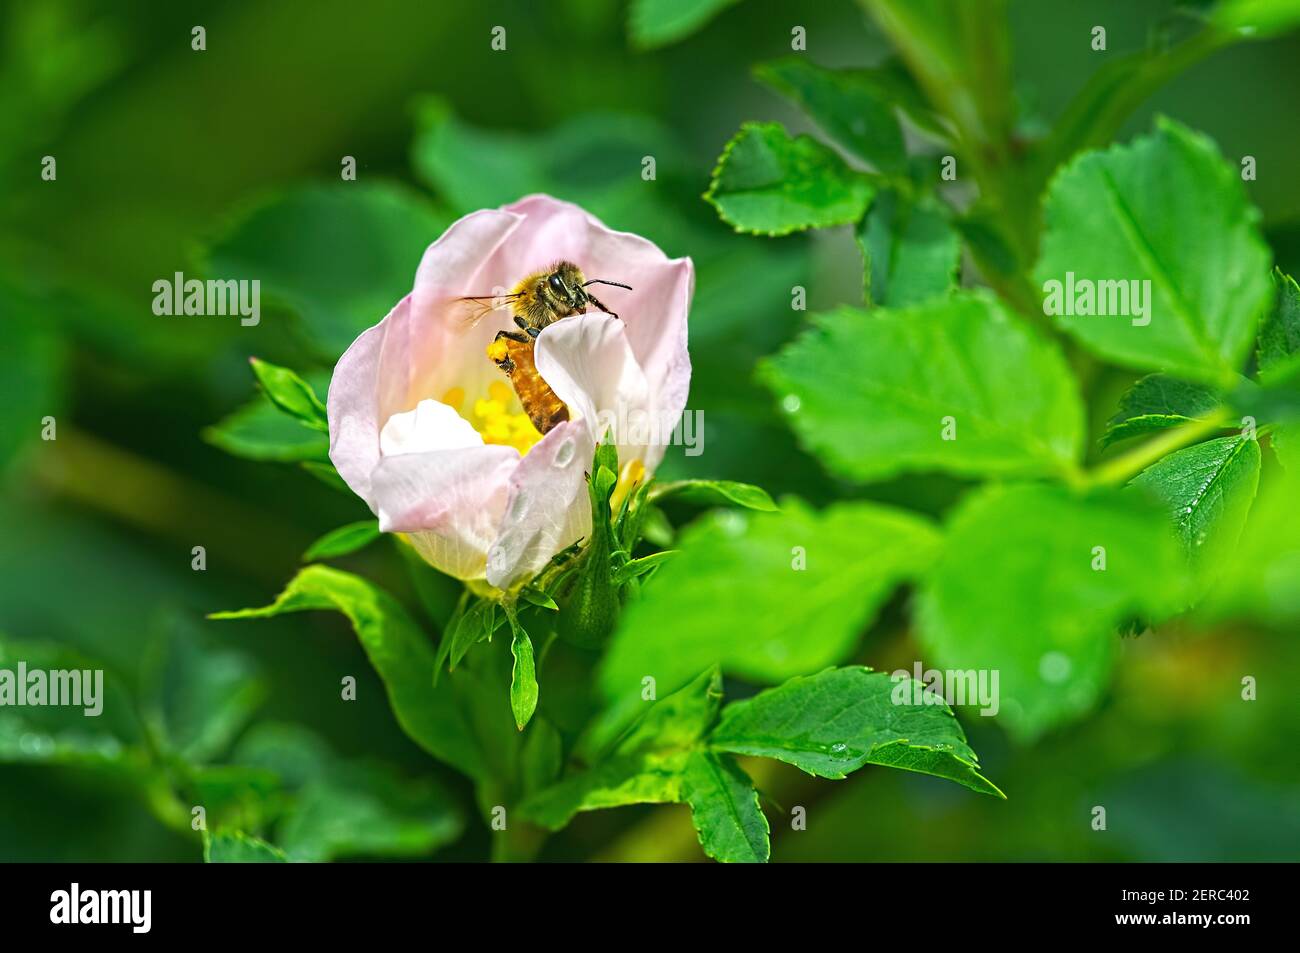 Une abeille occidentale (APIs mellifera) avec un sac de pollen émergeant d'une fleur rose. Banque D'Images